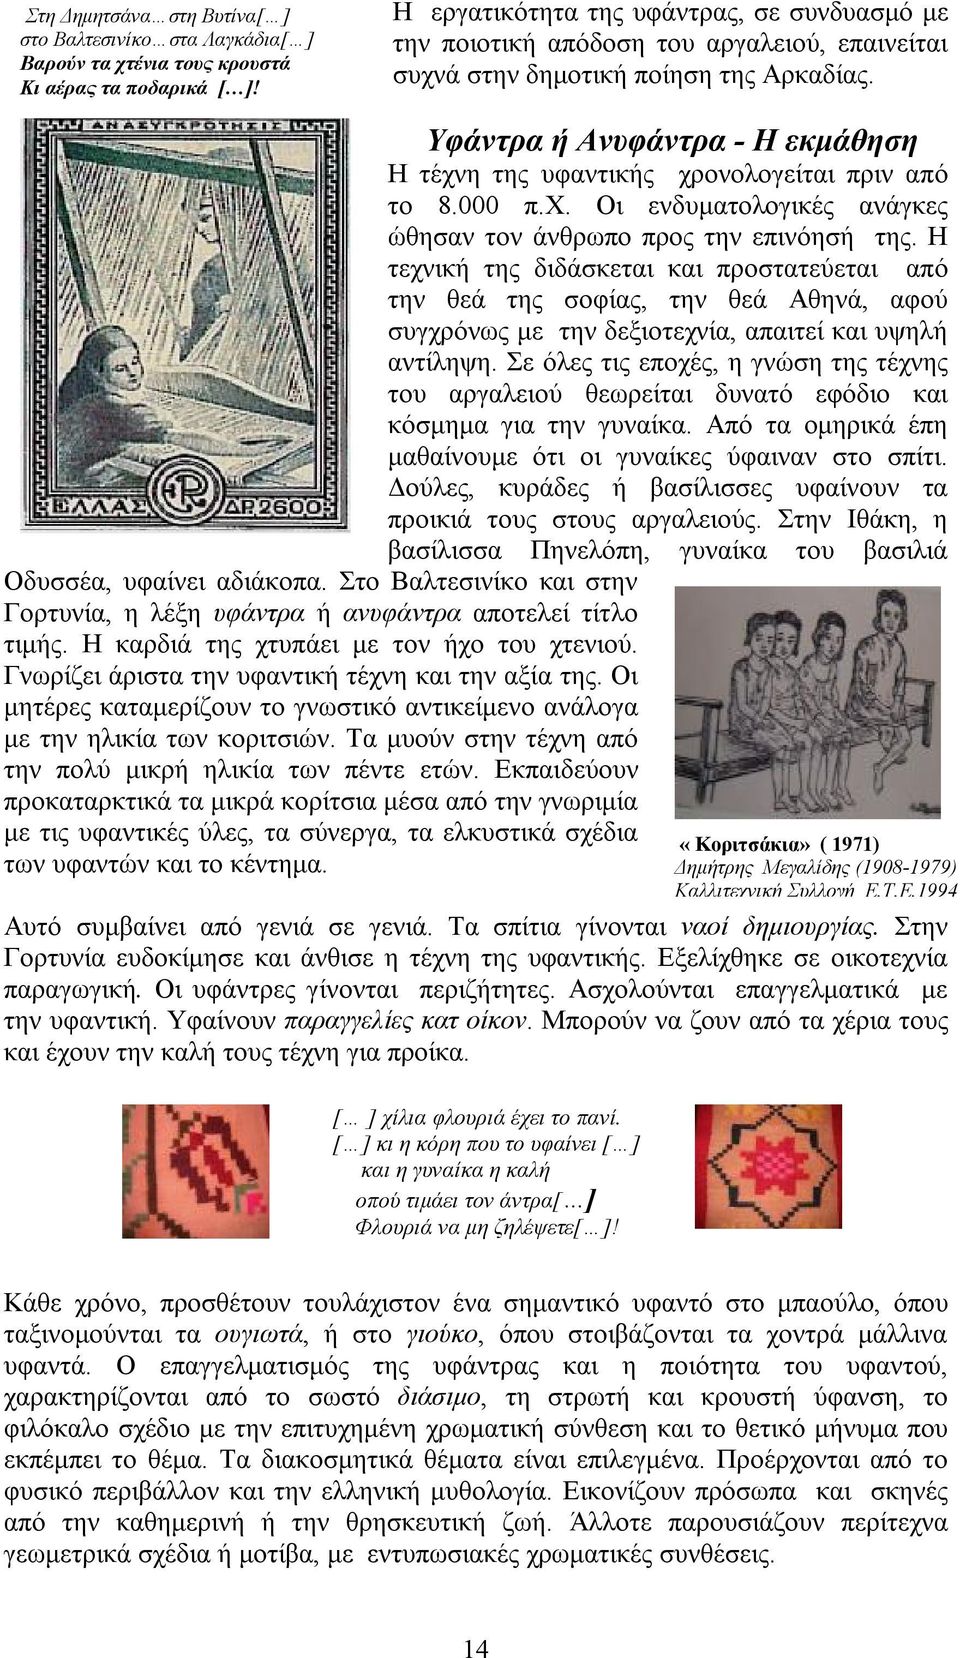 Υφάντρα ή Ανυφάντρα - Η εκμάθηση Η τέχνη της υφαντικής χρονολογείται πριν από το 8.000 π.χ. Οι ενδυματολογικές ανάγκες ώθησαν τον άνθρωπο προς την επινόησή της.